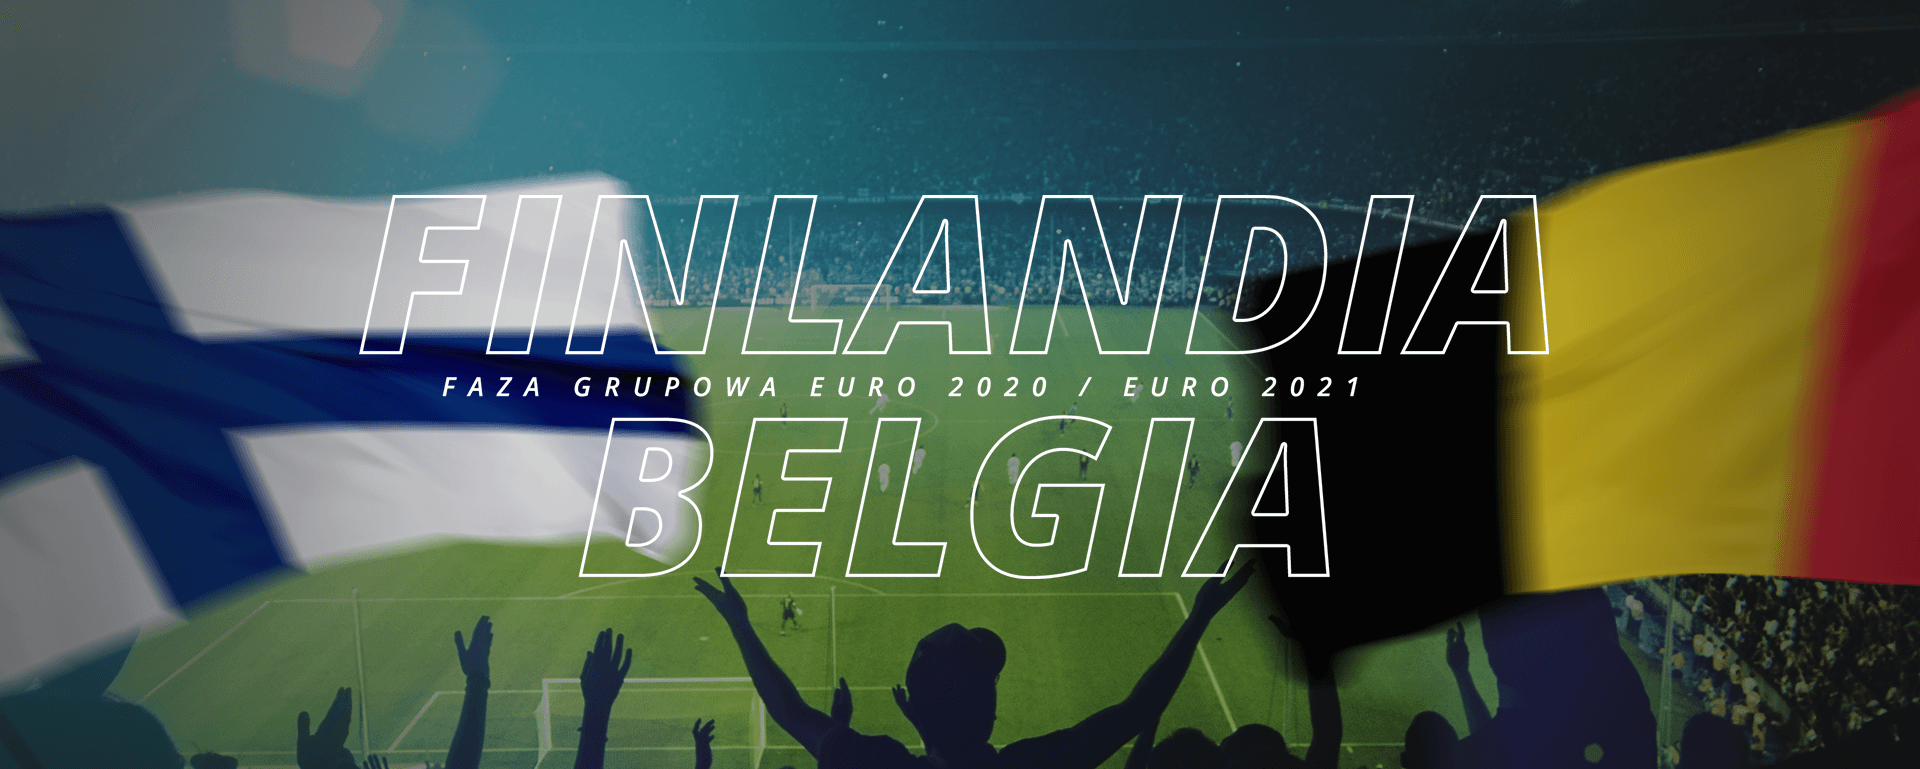 Finlandia – Belgia | faza grupowa Euro 2020 / Euro 2021